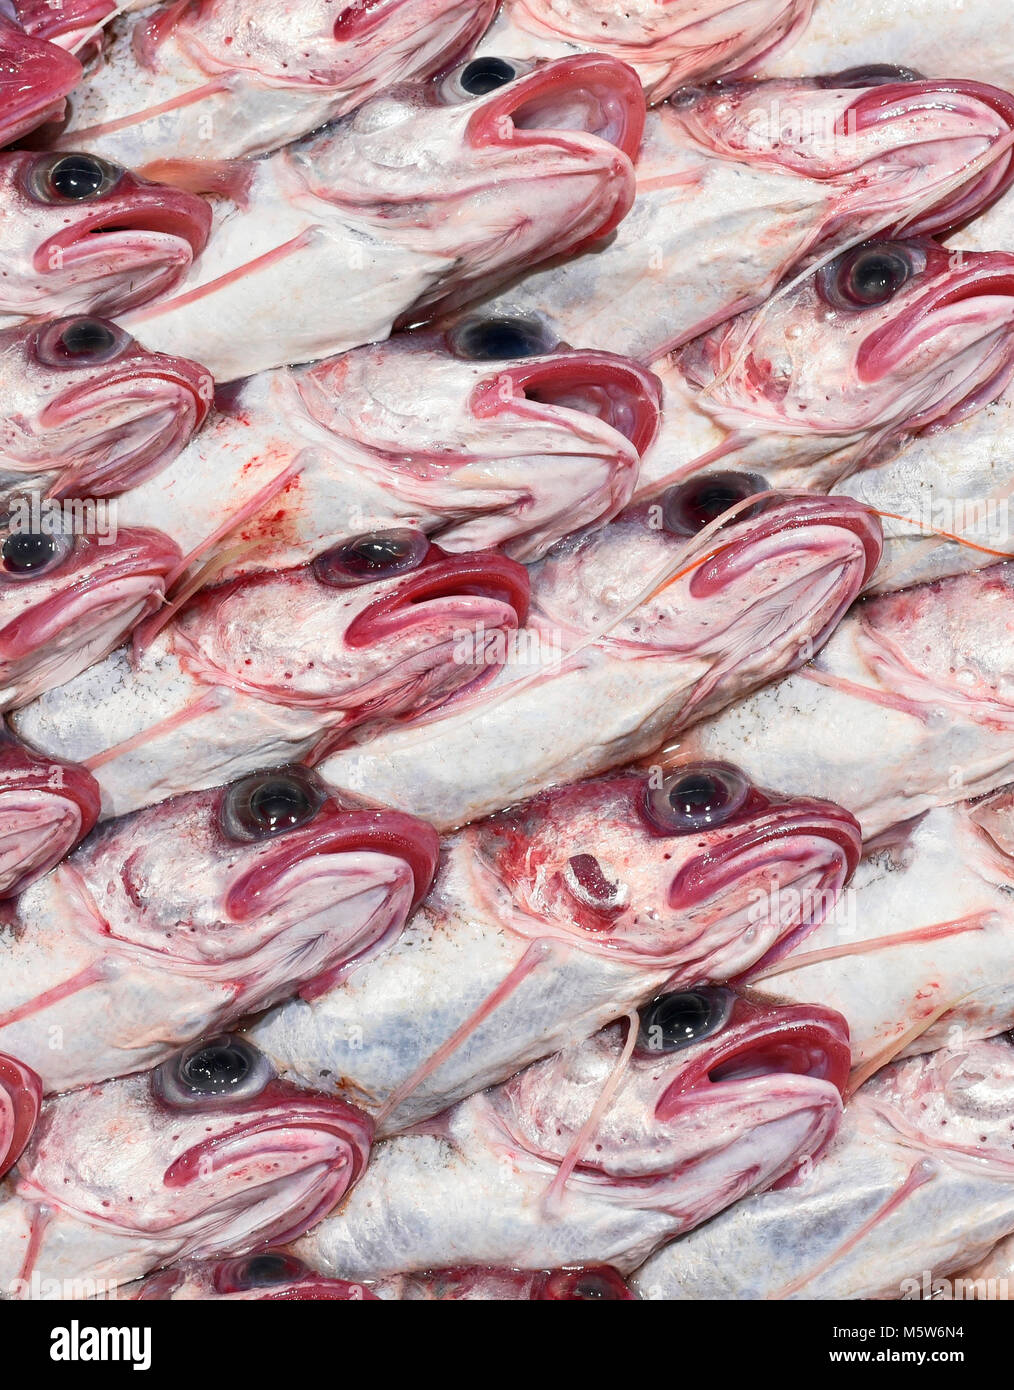 Frischer Kabeljau oder Eis gekühlt Fisch auf einem Fischmarkt abgewürgt. Nahaufnahme von frischem Seefisch in einer Reihe. Gourmet Essen, gesunde Ernährung Szene, rohen Fisch. Stockfoto